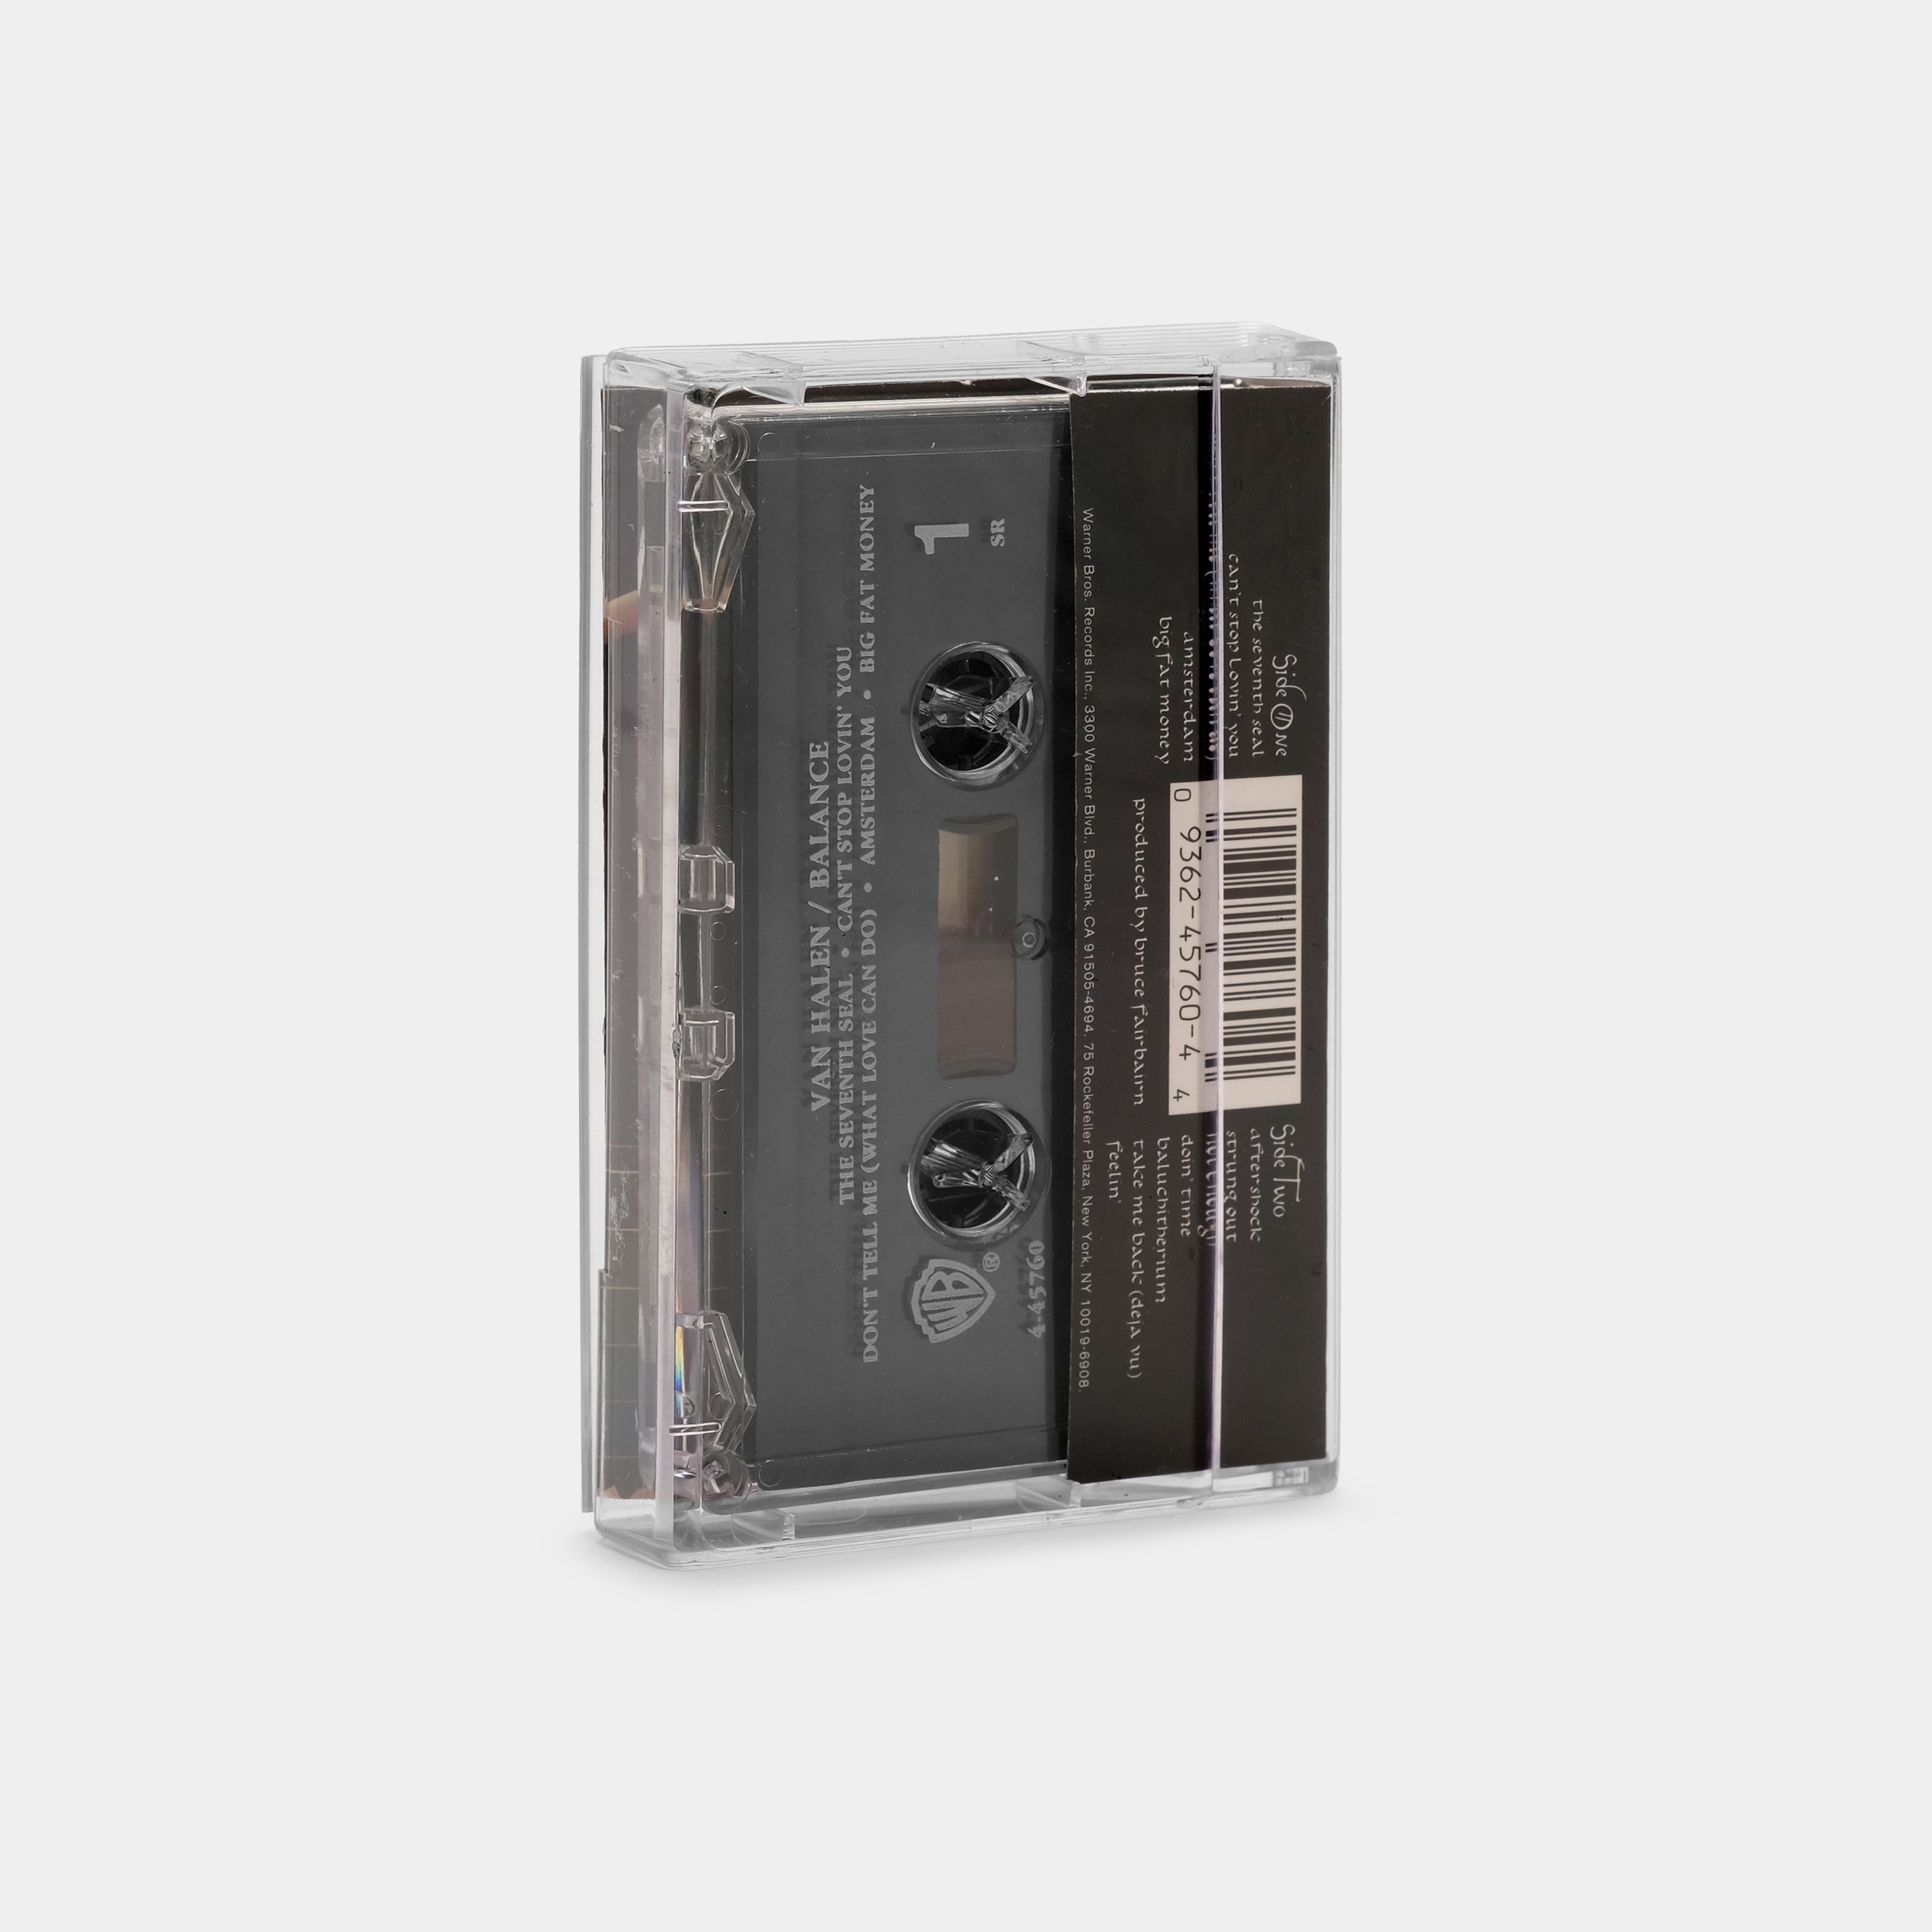 Van Halen - Balance Cassette Tape